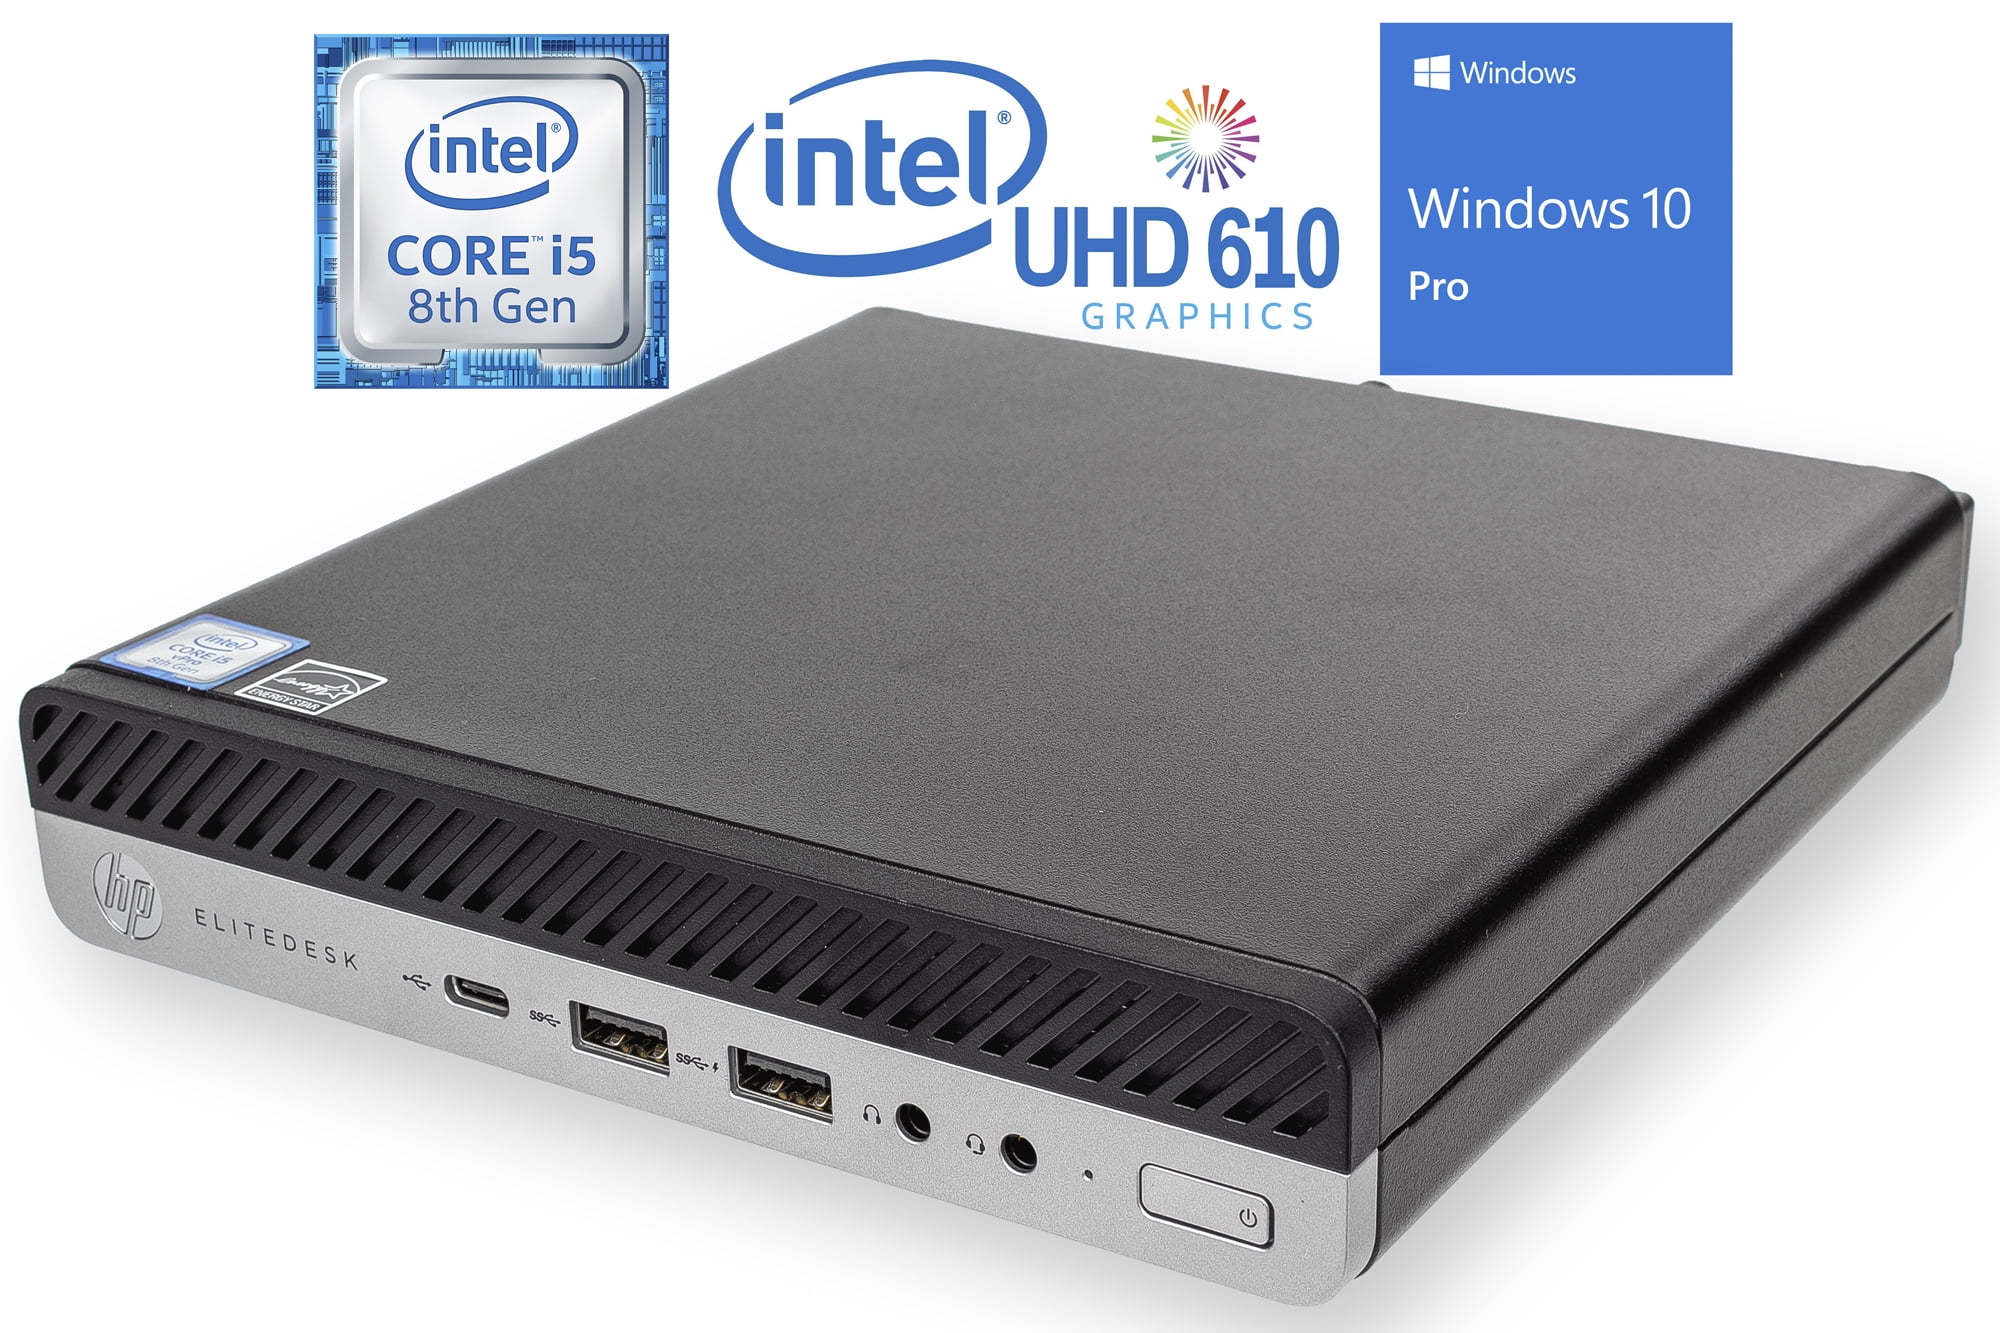 HP 800 G2 Mini Core i5 6500T 2.5GHz 8GB SSD Win10 PC Desktop